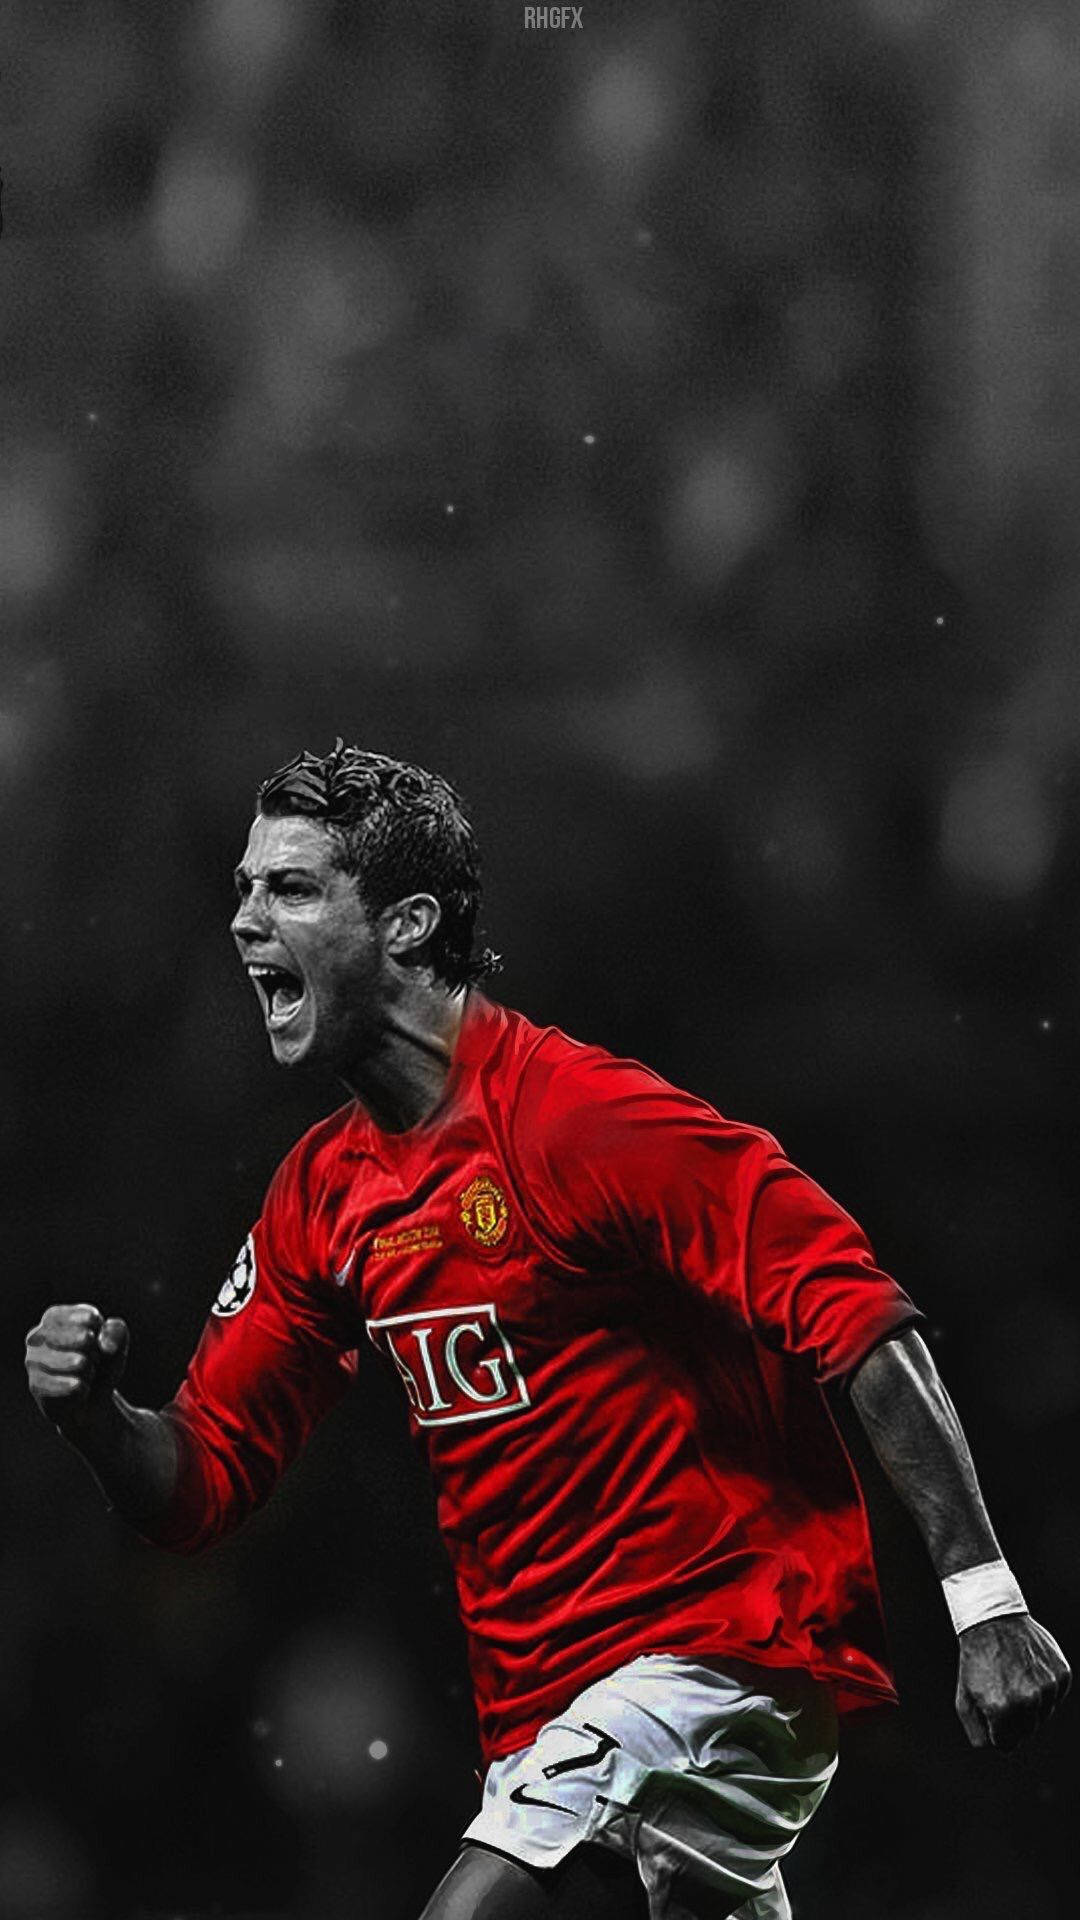 Cristiano Ronaldo Portugal Manchester United AIG Wallpaper